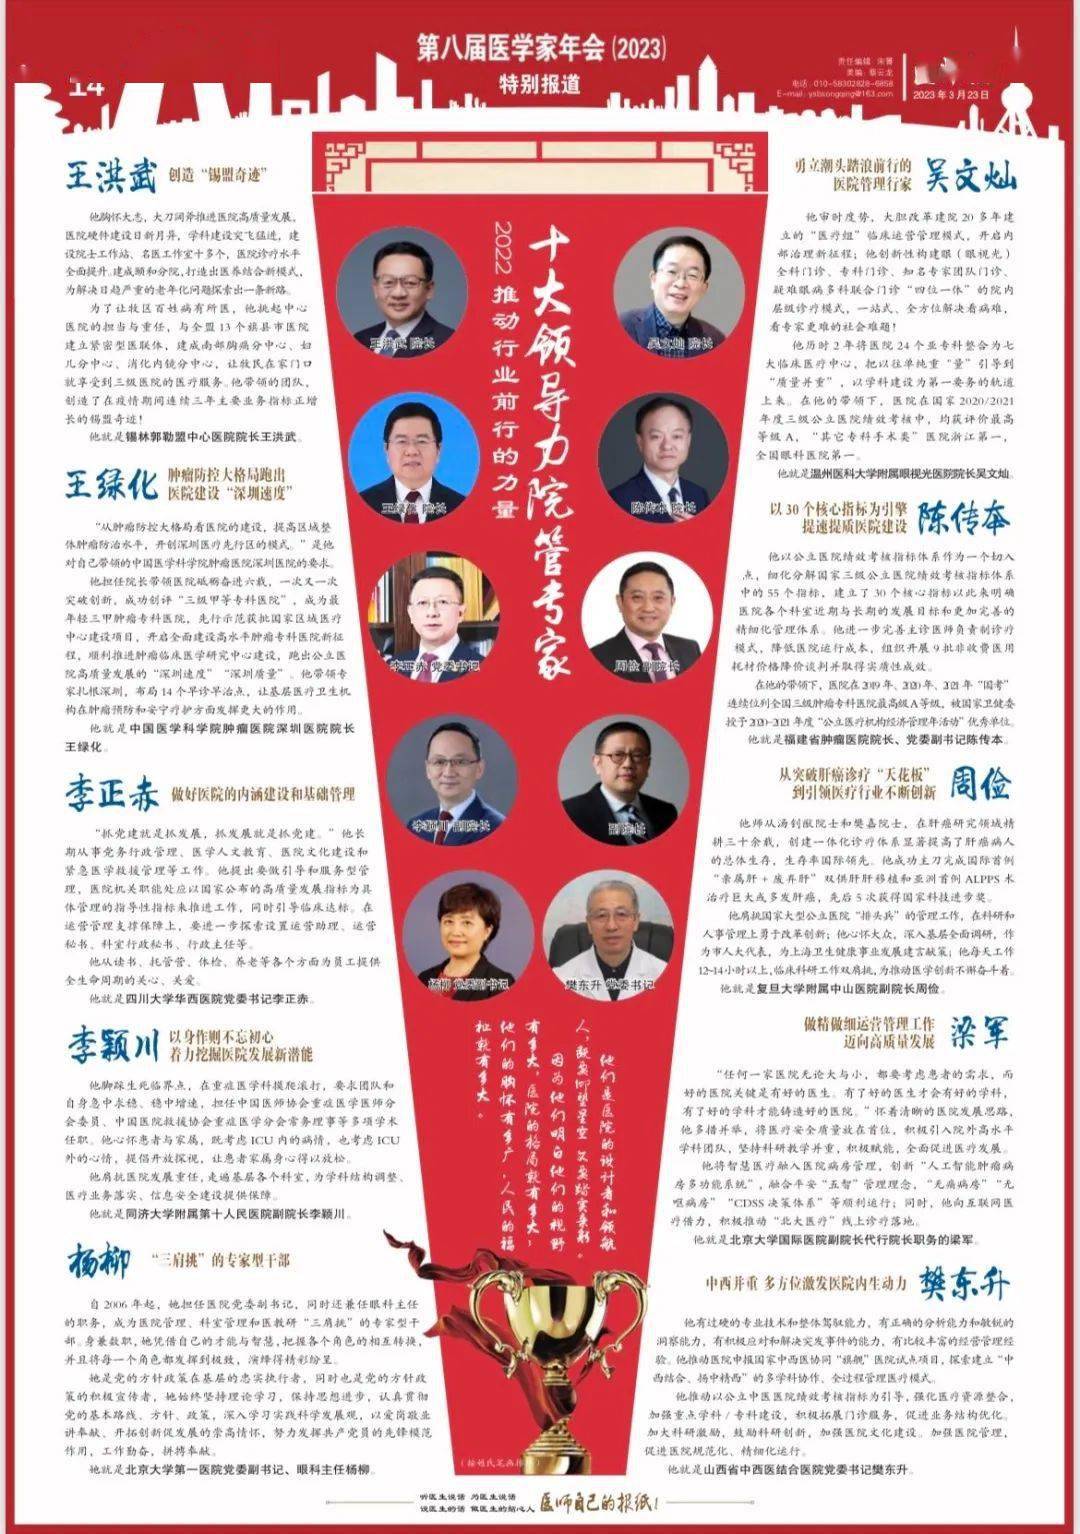 北京大学国际医院梁军院长荣获2022年度“推进行业前行的力量——十大领导力院管专家”荣誉